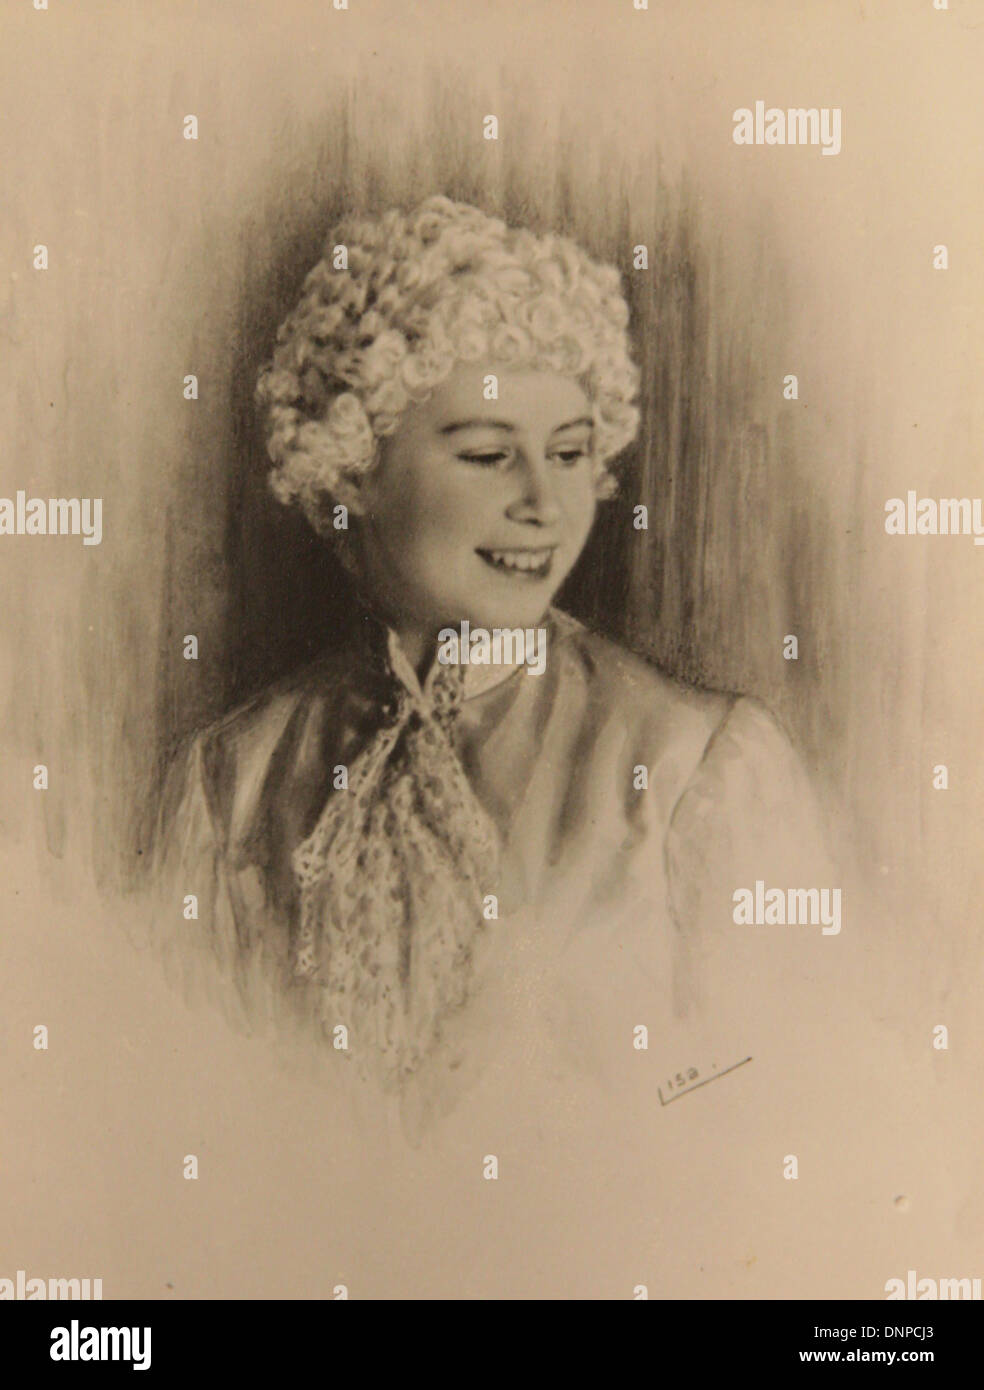 Une photographie de la princesse Elizabeth dans le jeu Aladdin, 1943 Banque D'Images